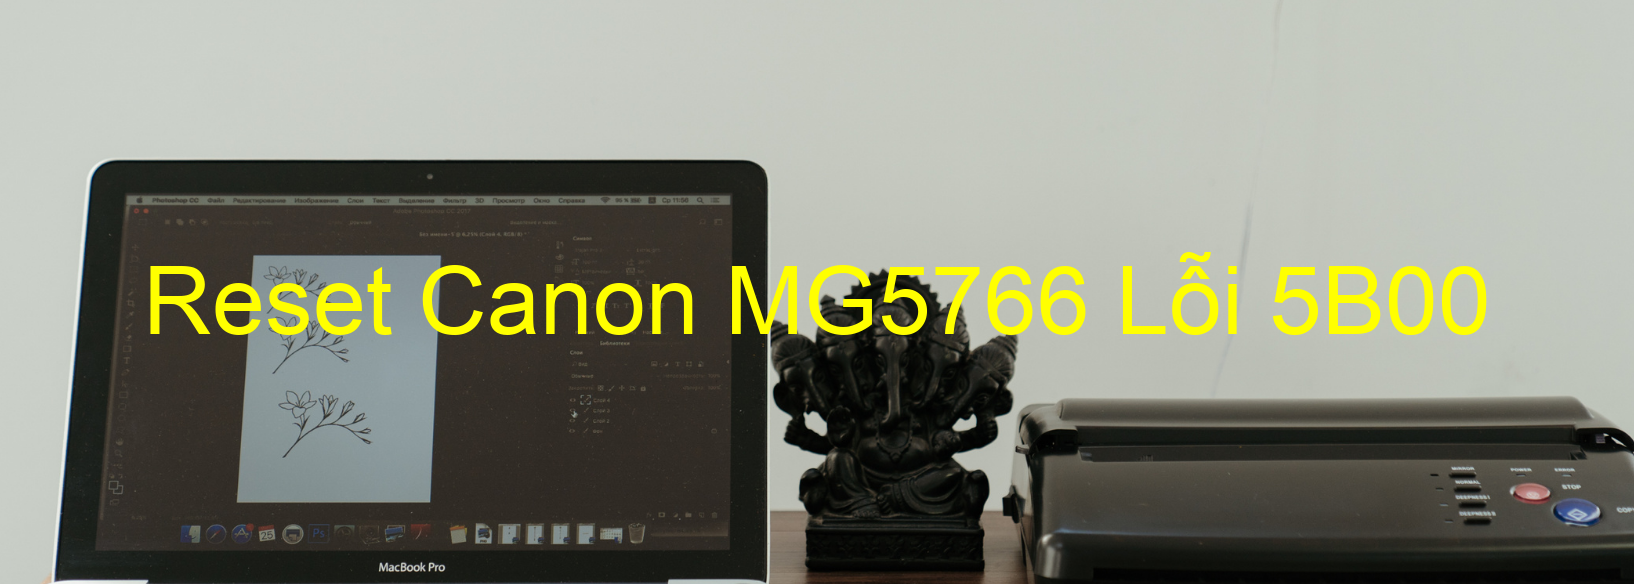 Reset Canon MG5766 Lỗi 5B00